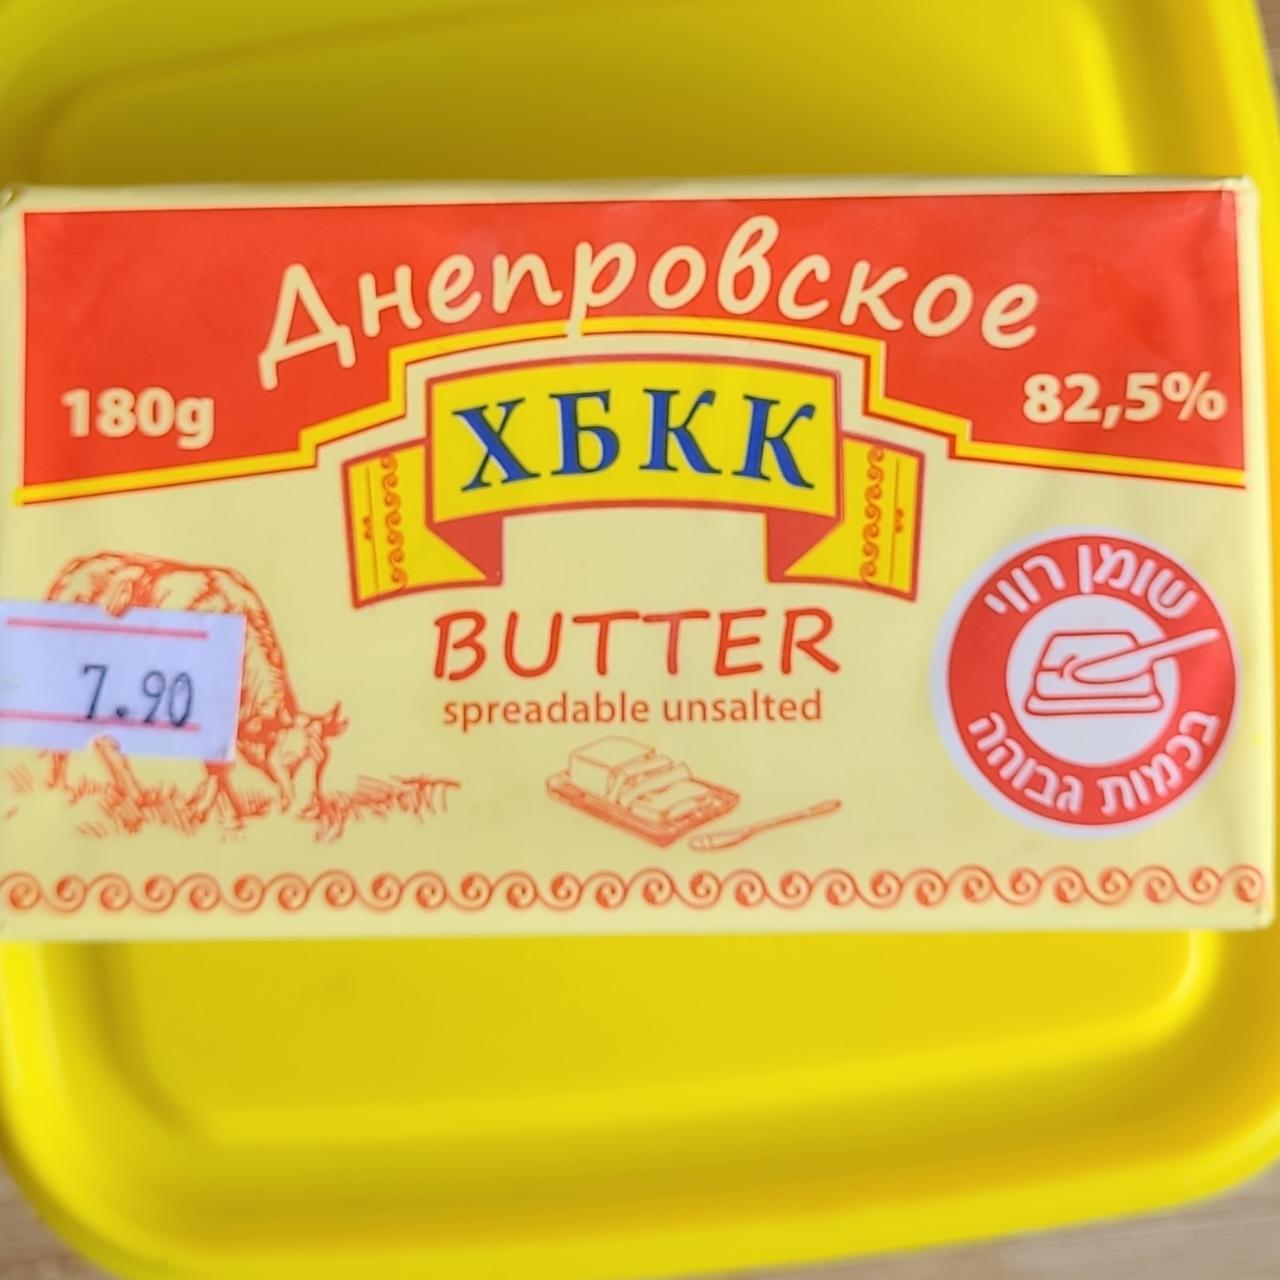 Фото - Масло сливочное 82.5% Днепровское хбкк